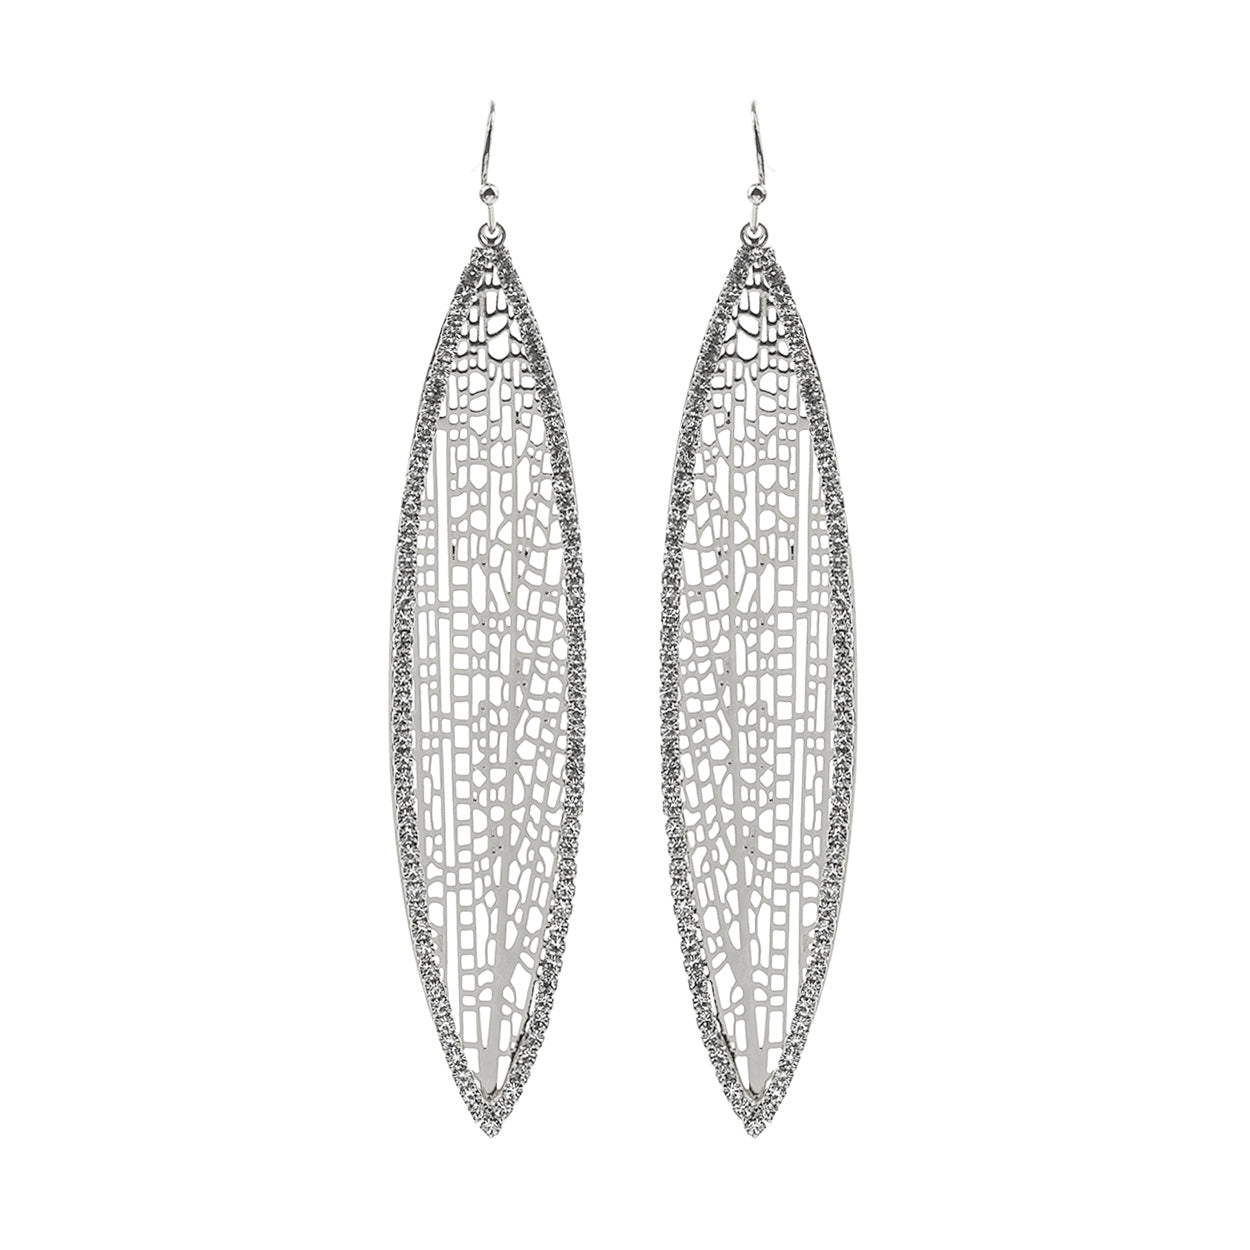 Pretty rim earrings - Monique Fashion Accessories